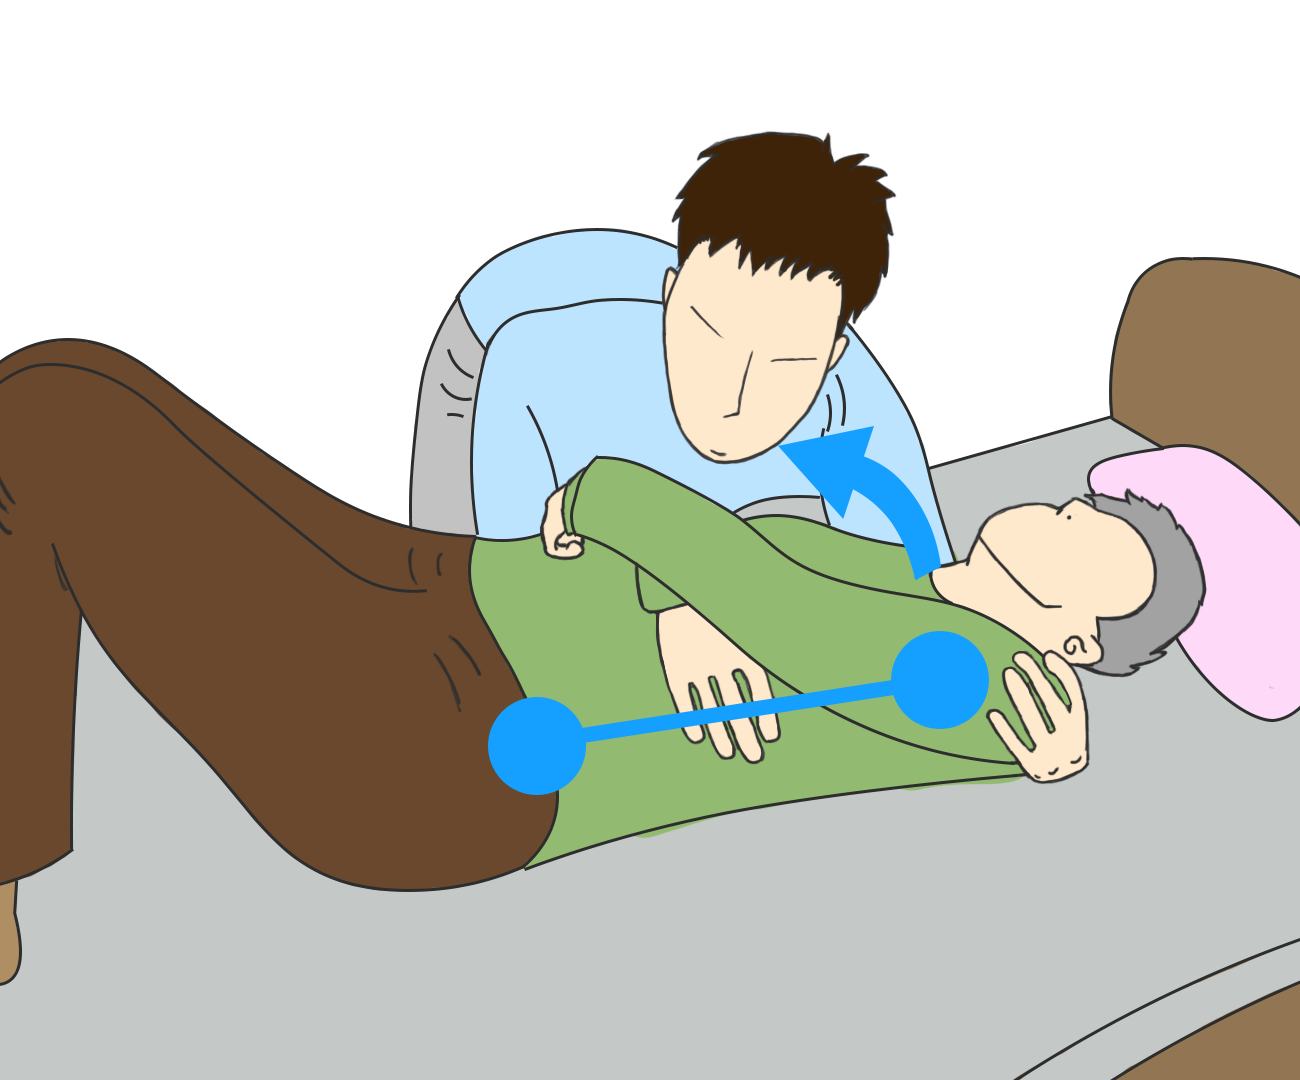 ボディメカニクスとは 腰痛予防につながる介護技術の8原則をイラストで解説 サービス付き高齢者向け住宅の学研ココファン